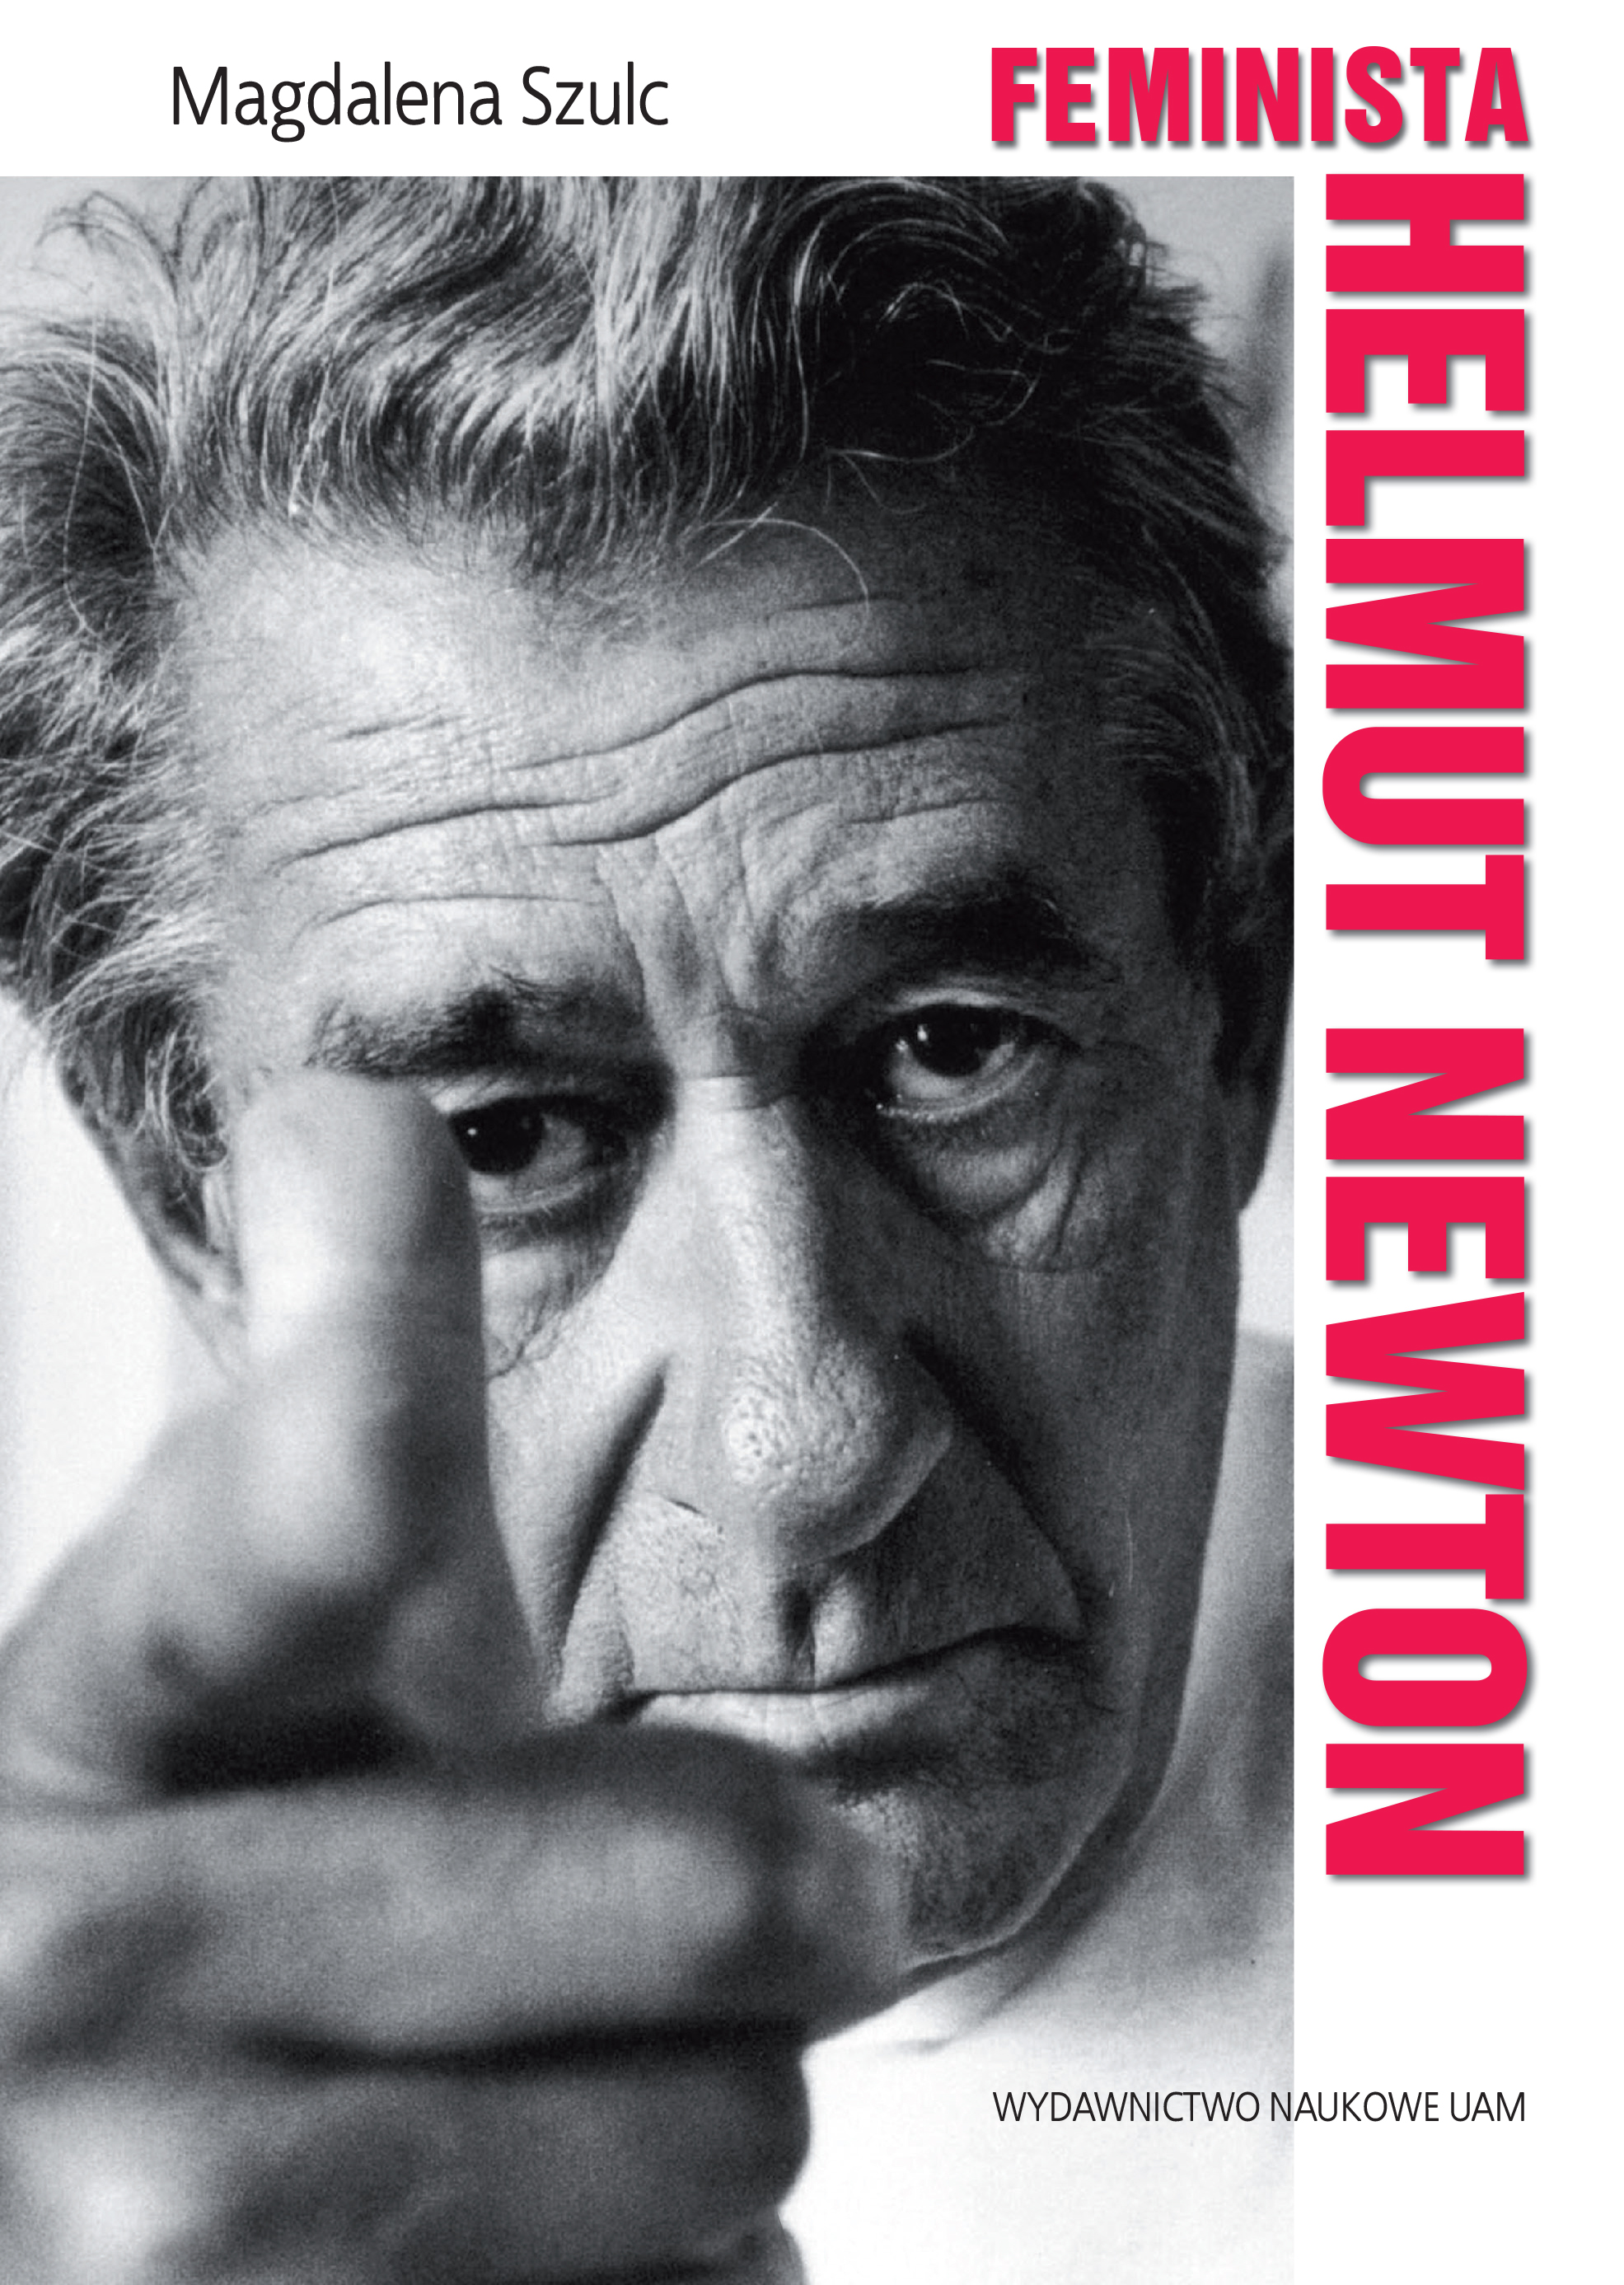 The Feminist Helmut Newton Cover Image